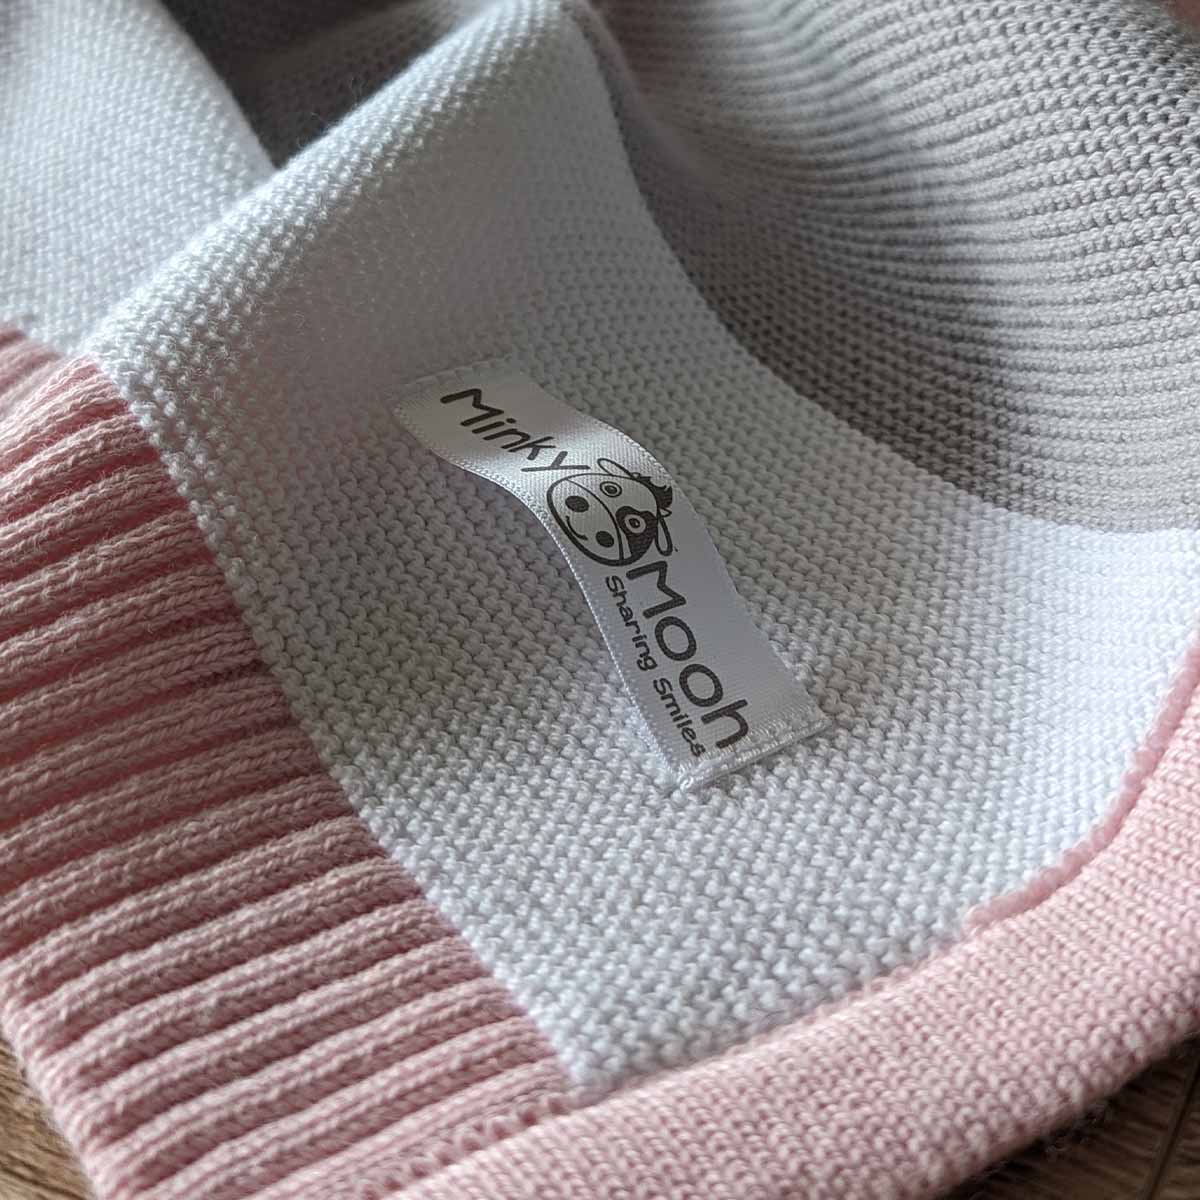 Nahaufnahme der Strick-Textur einer rosa-weiß-grauen Bio-Baumwolldecke mit Logo-Etikett 'Minky Mooh'